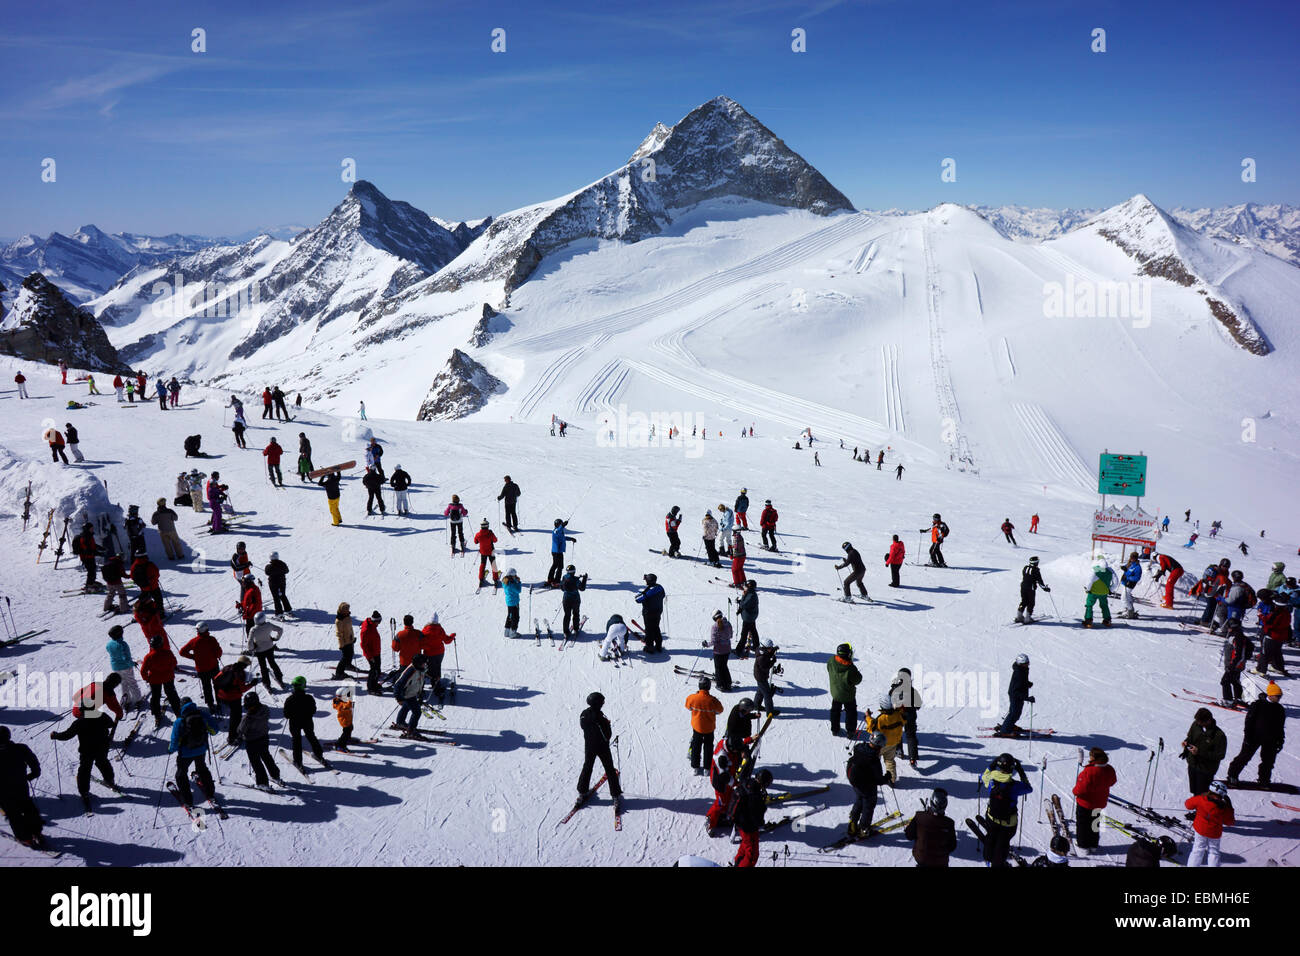 Les skieurs sur le glacier de Stubai, avec Mtns. Stubaier Wildspitze (3340m) et Daunkogel (3330 m), Tyrol, Autriche Banque D'Images